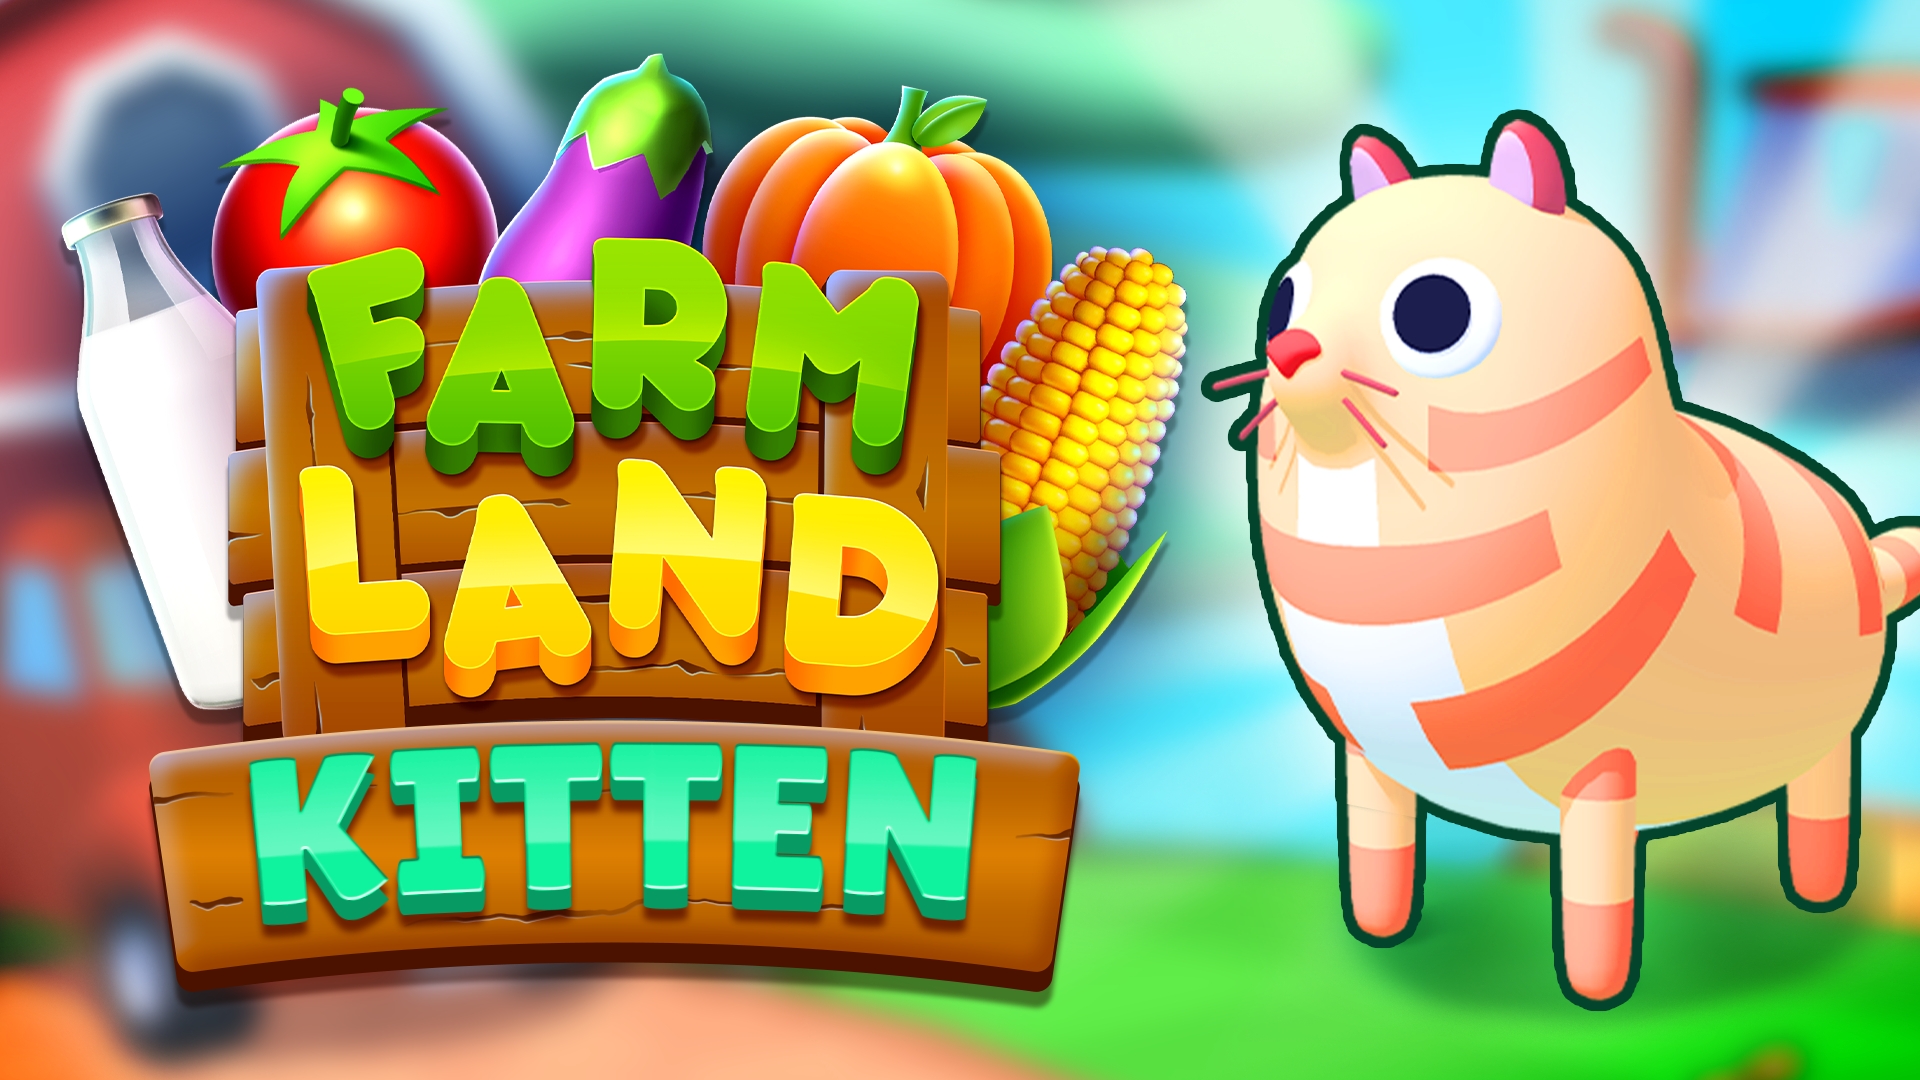 Farm Land: Kitten